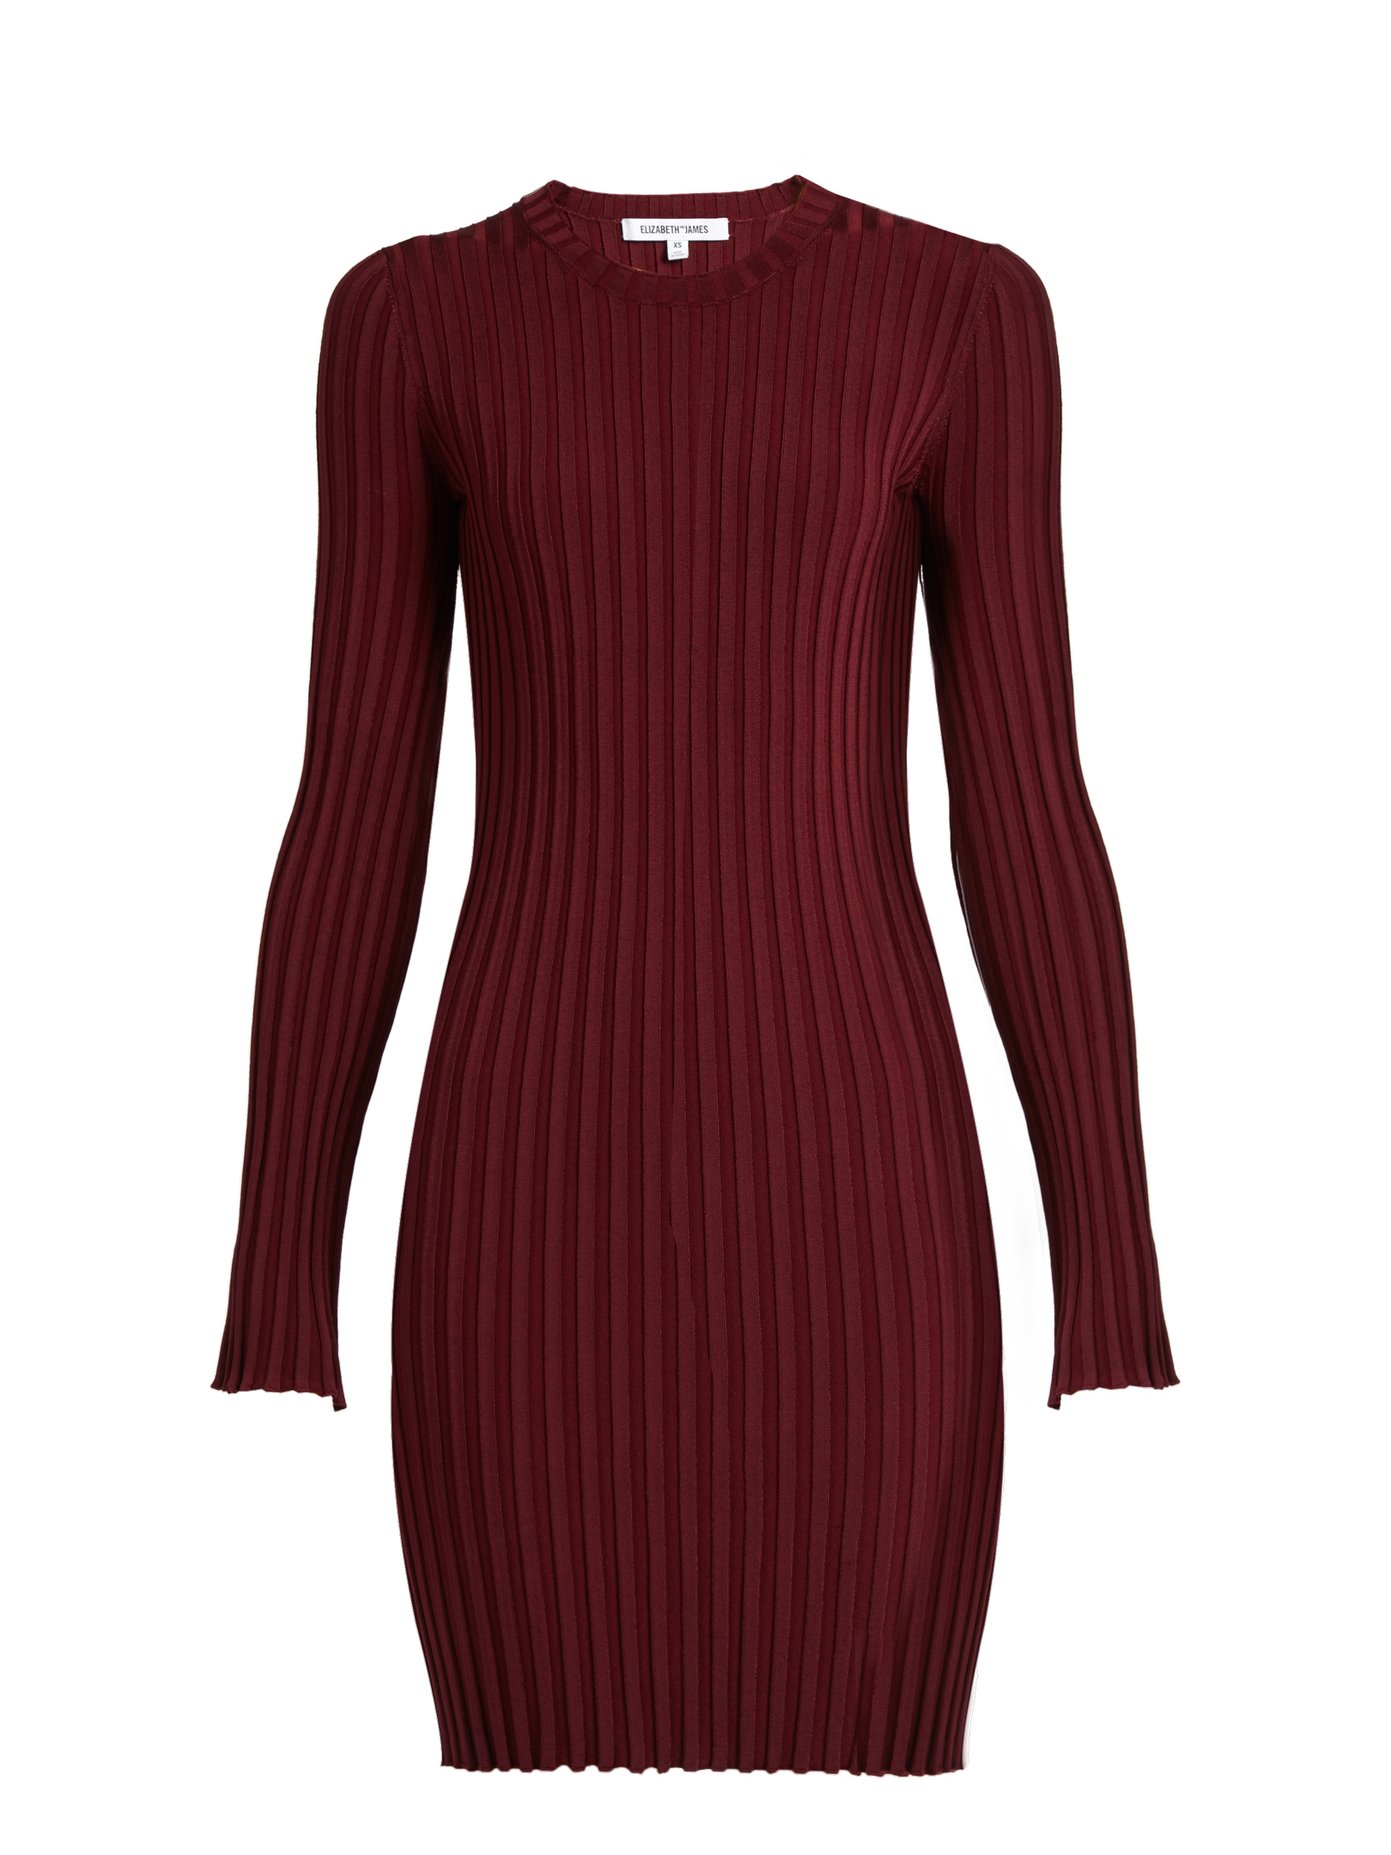 burgundy knitted dress uk